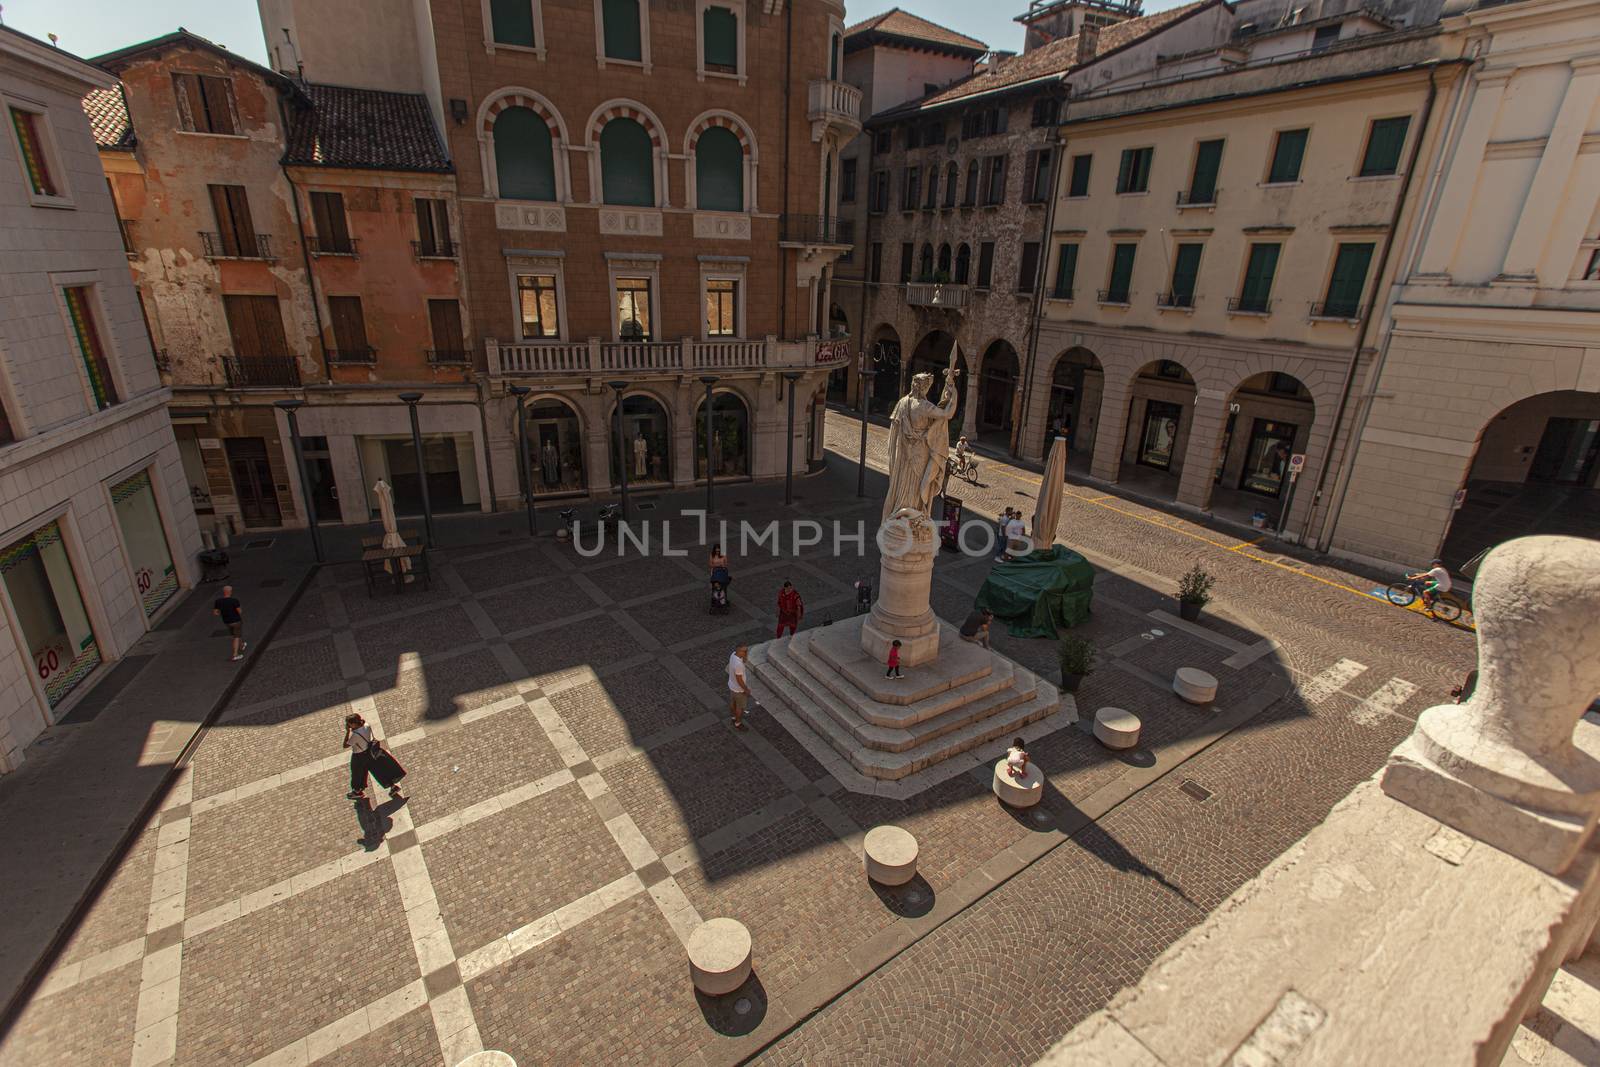 Piazza della Libertà in Treviso 9 by pippocarlot